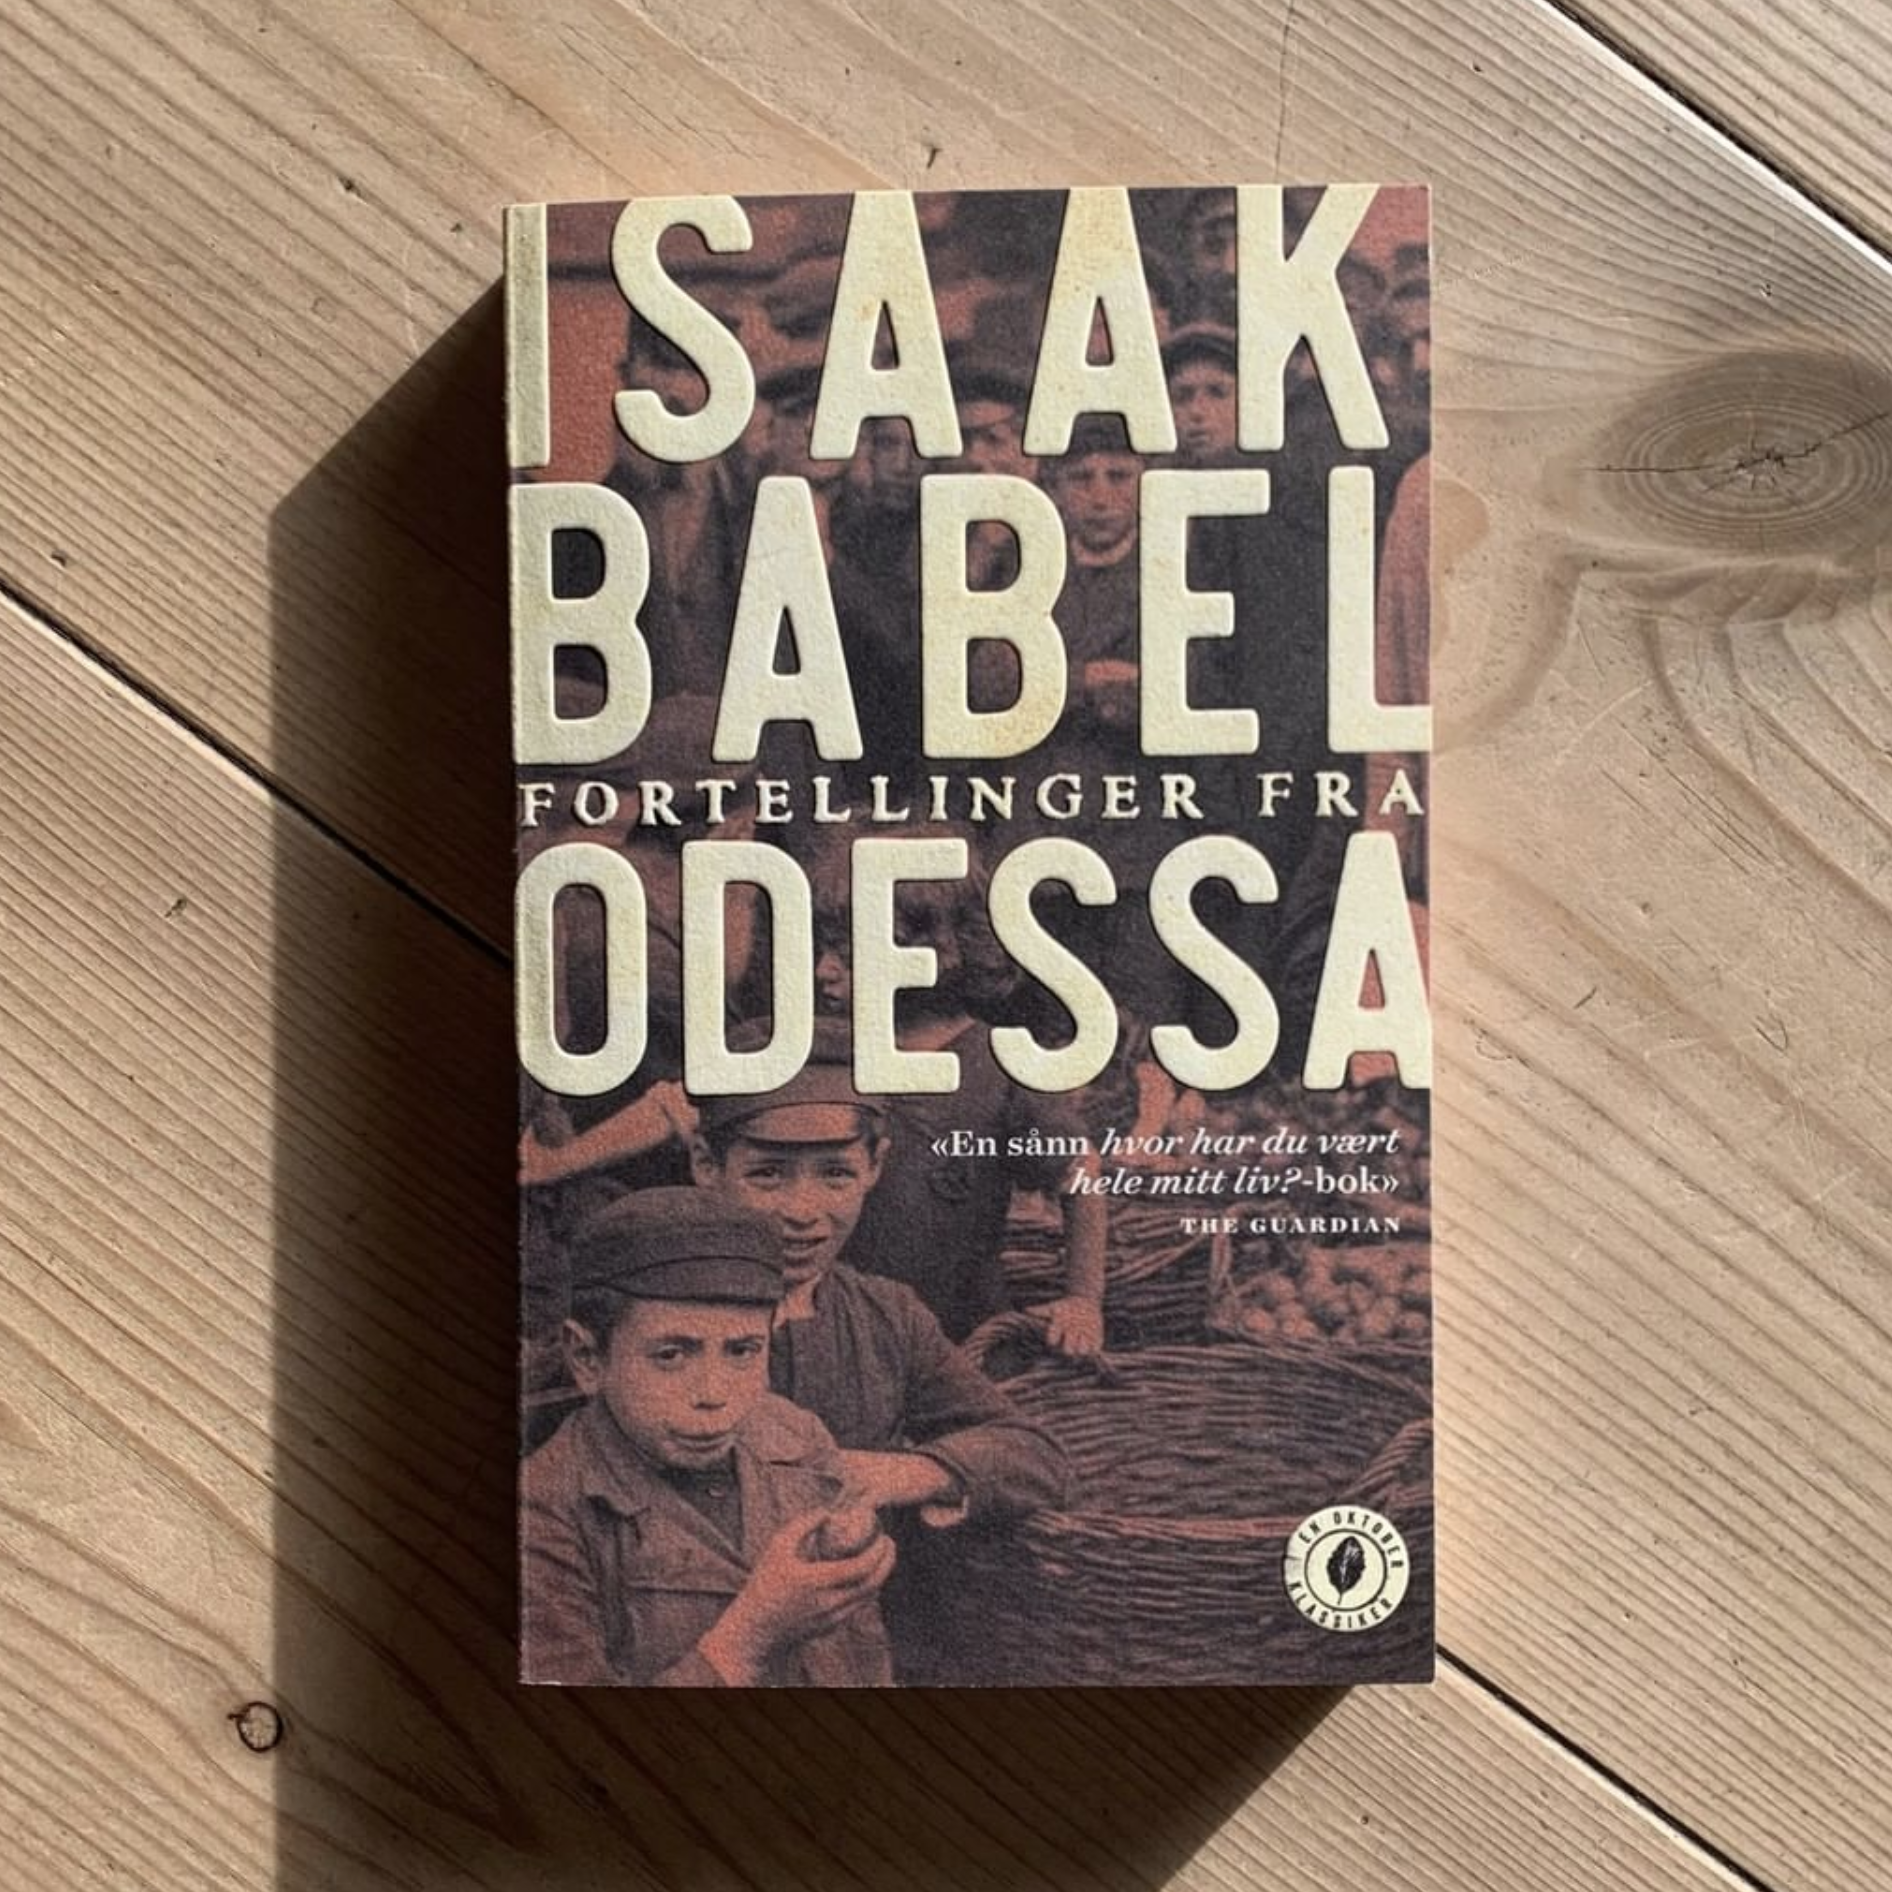 Fortellinger fra Odessa